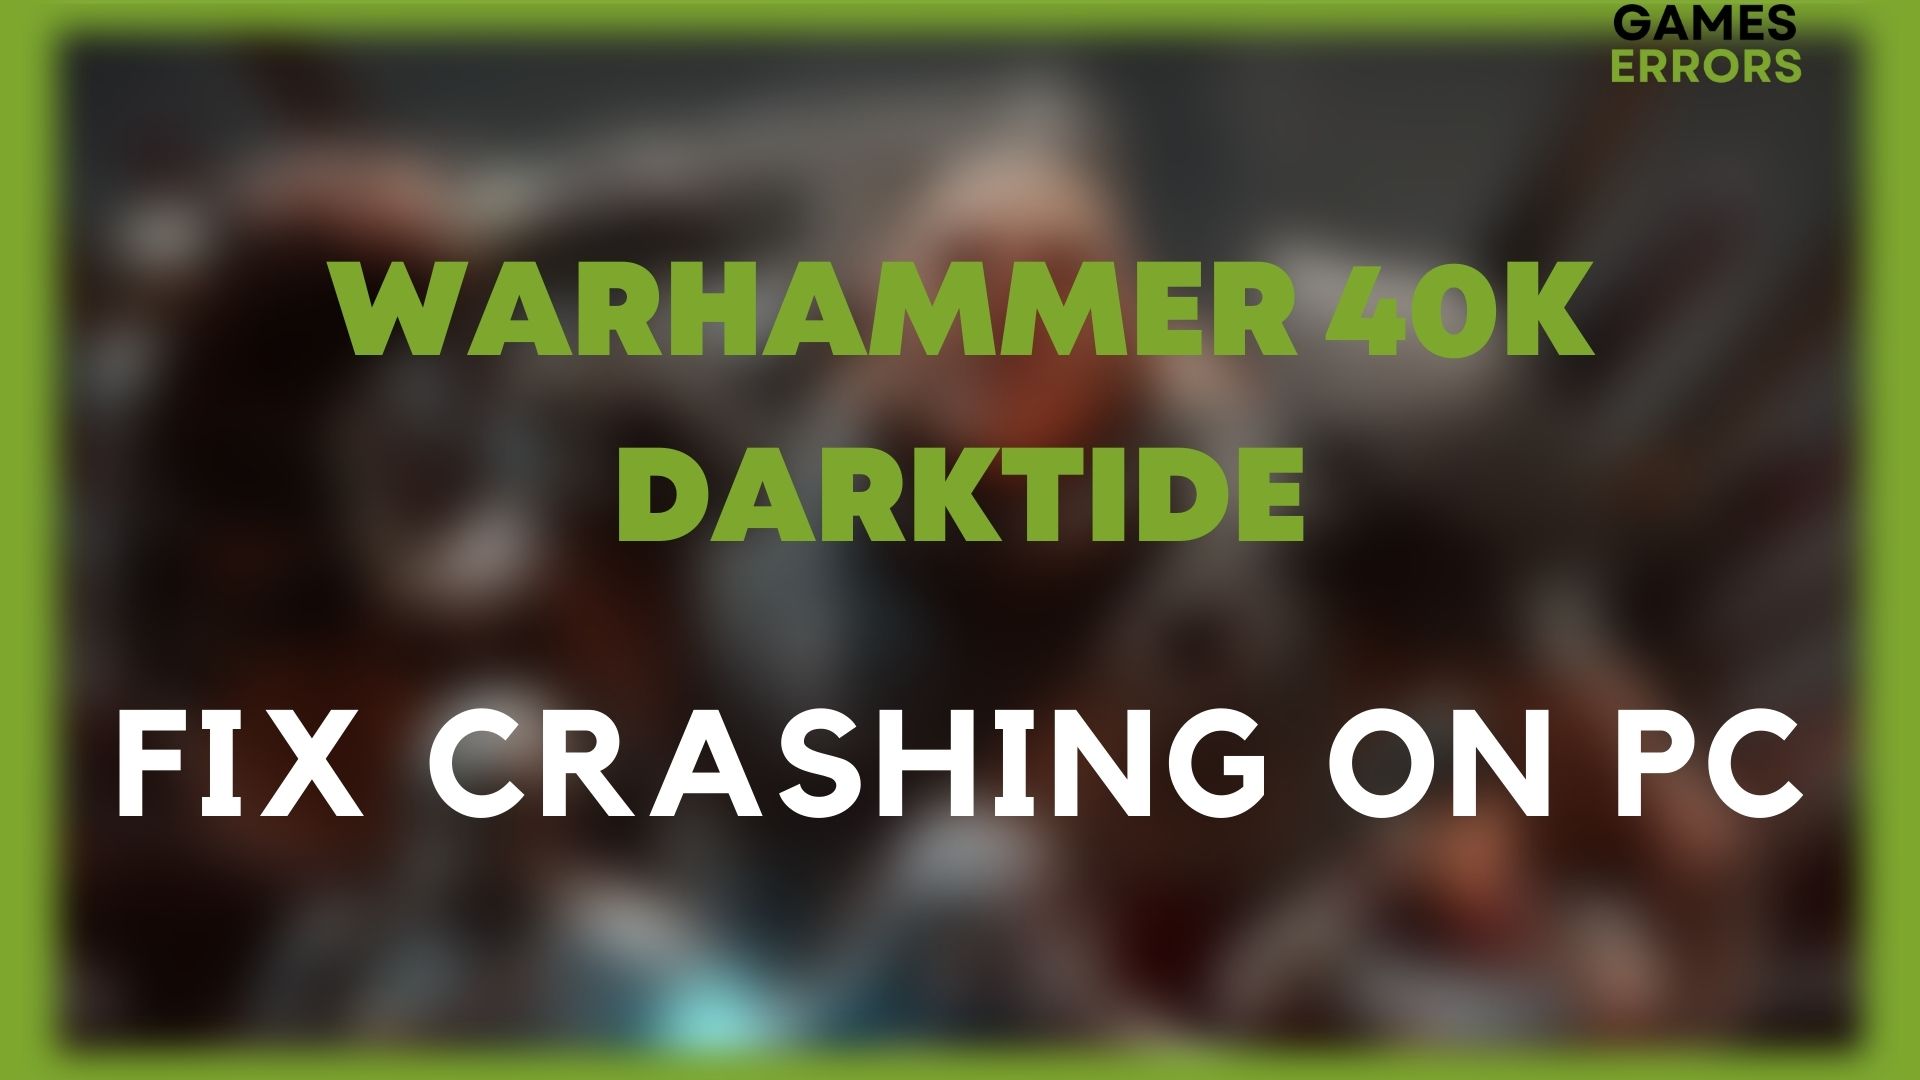 warhammer 40k darktide fix crashing on pc